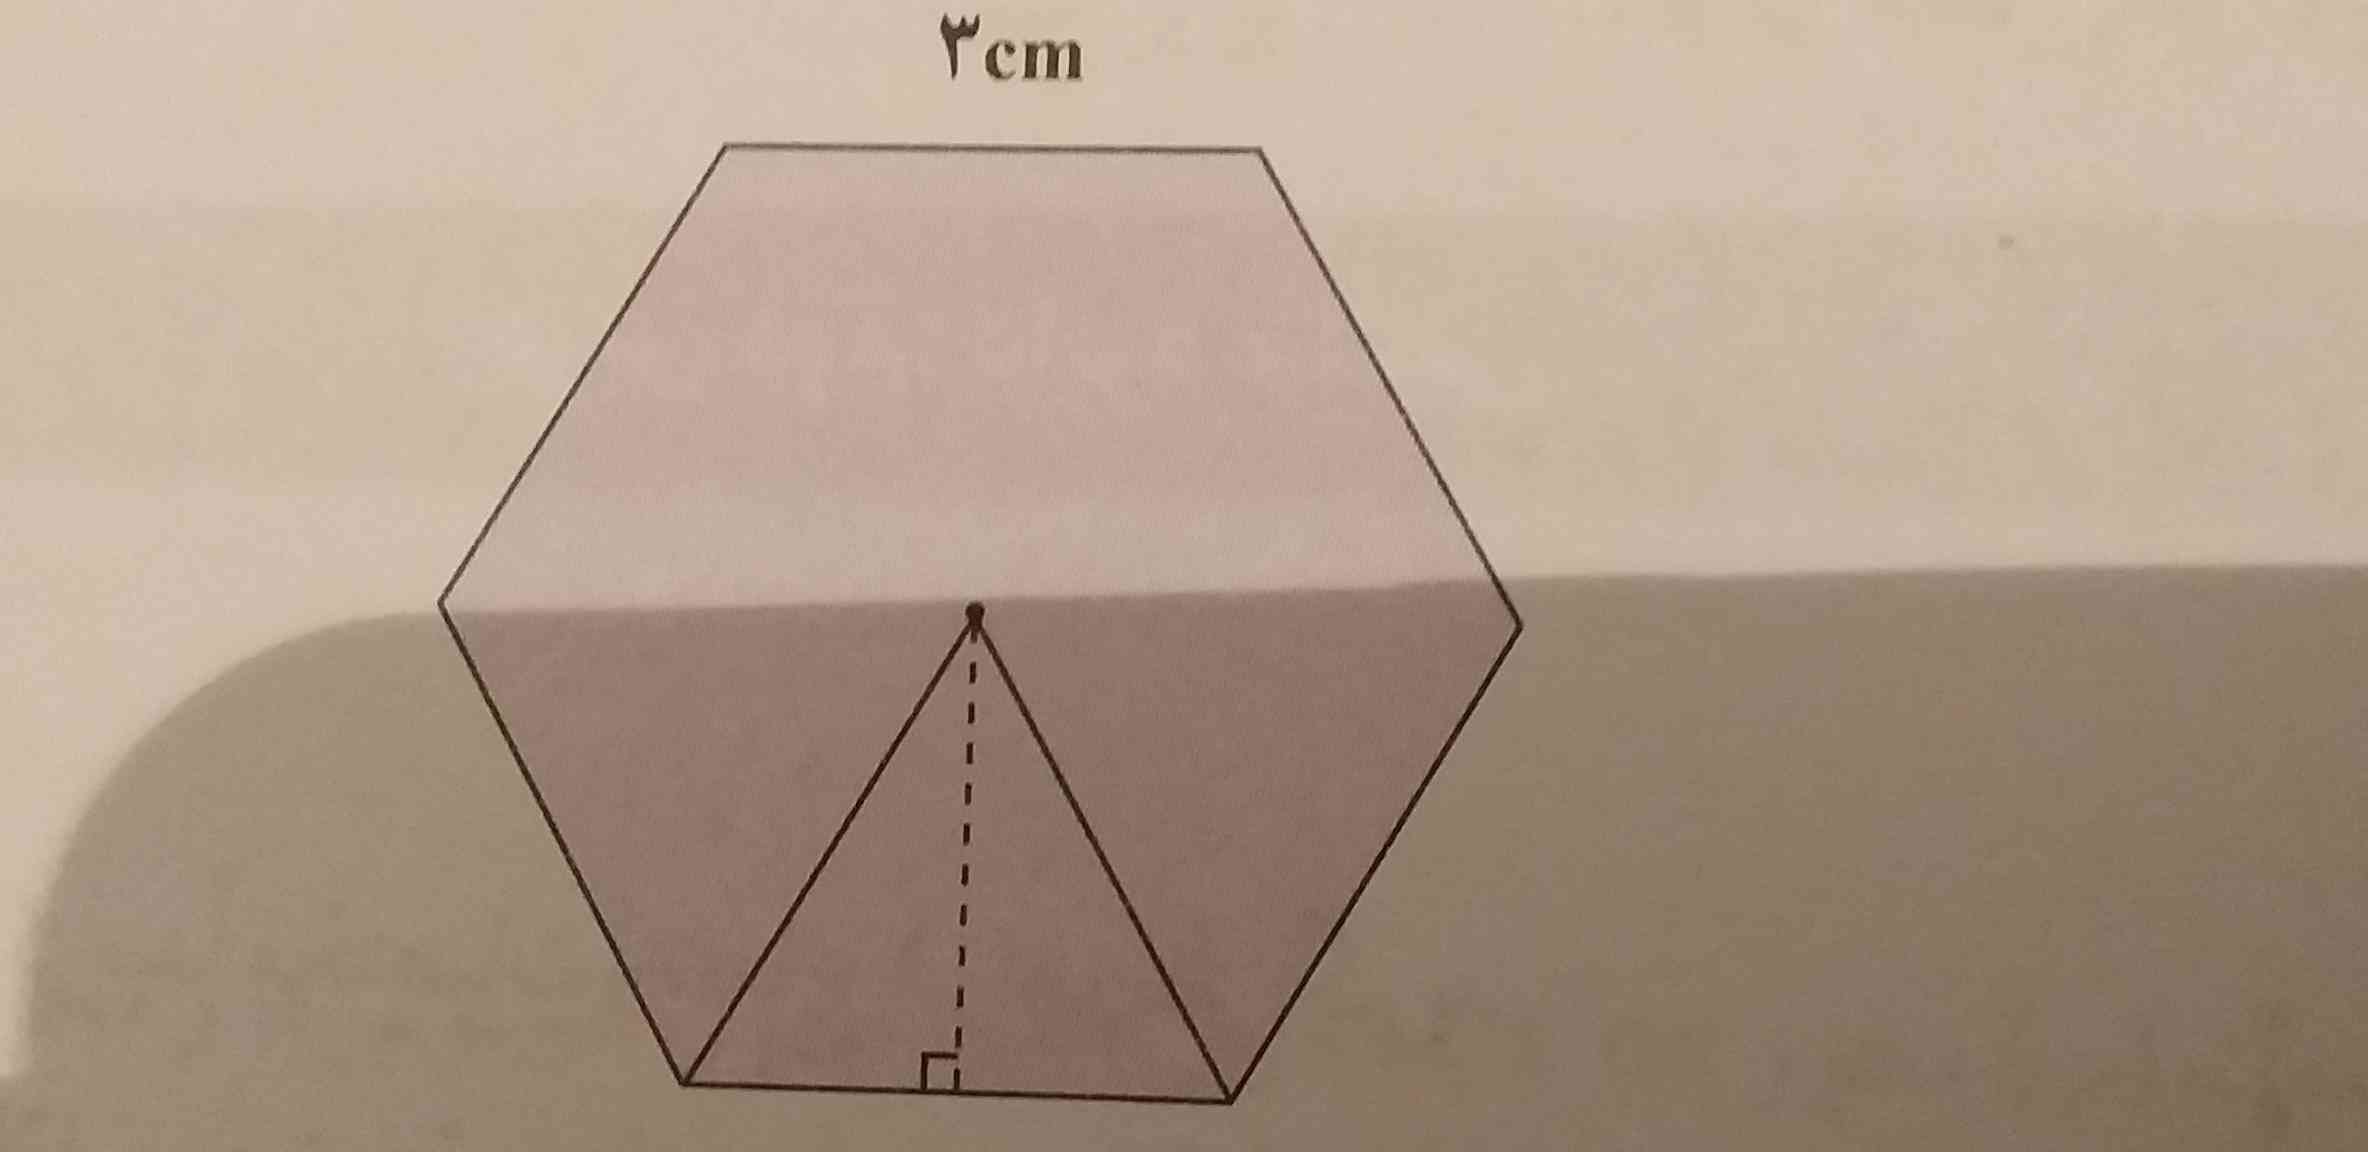 دلیل متساوی الاضلاع بودن مثلث داخل شش ضلعی منتظم چیست؟
لطفا سریع بدید